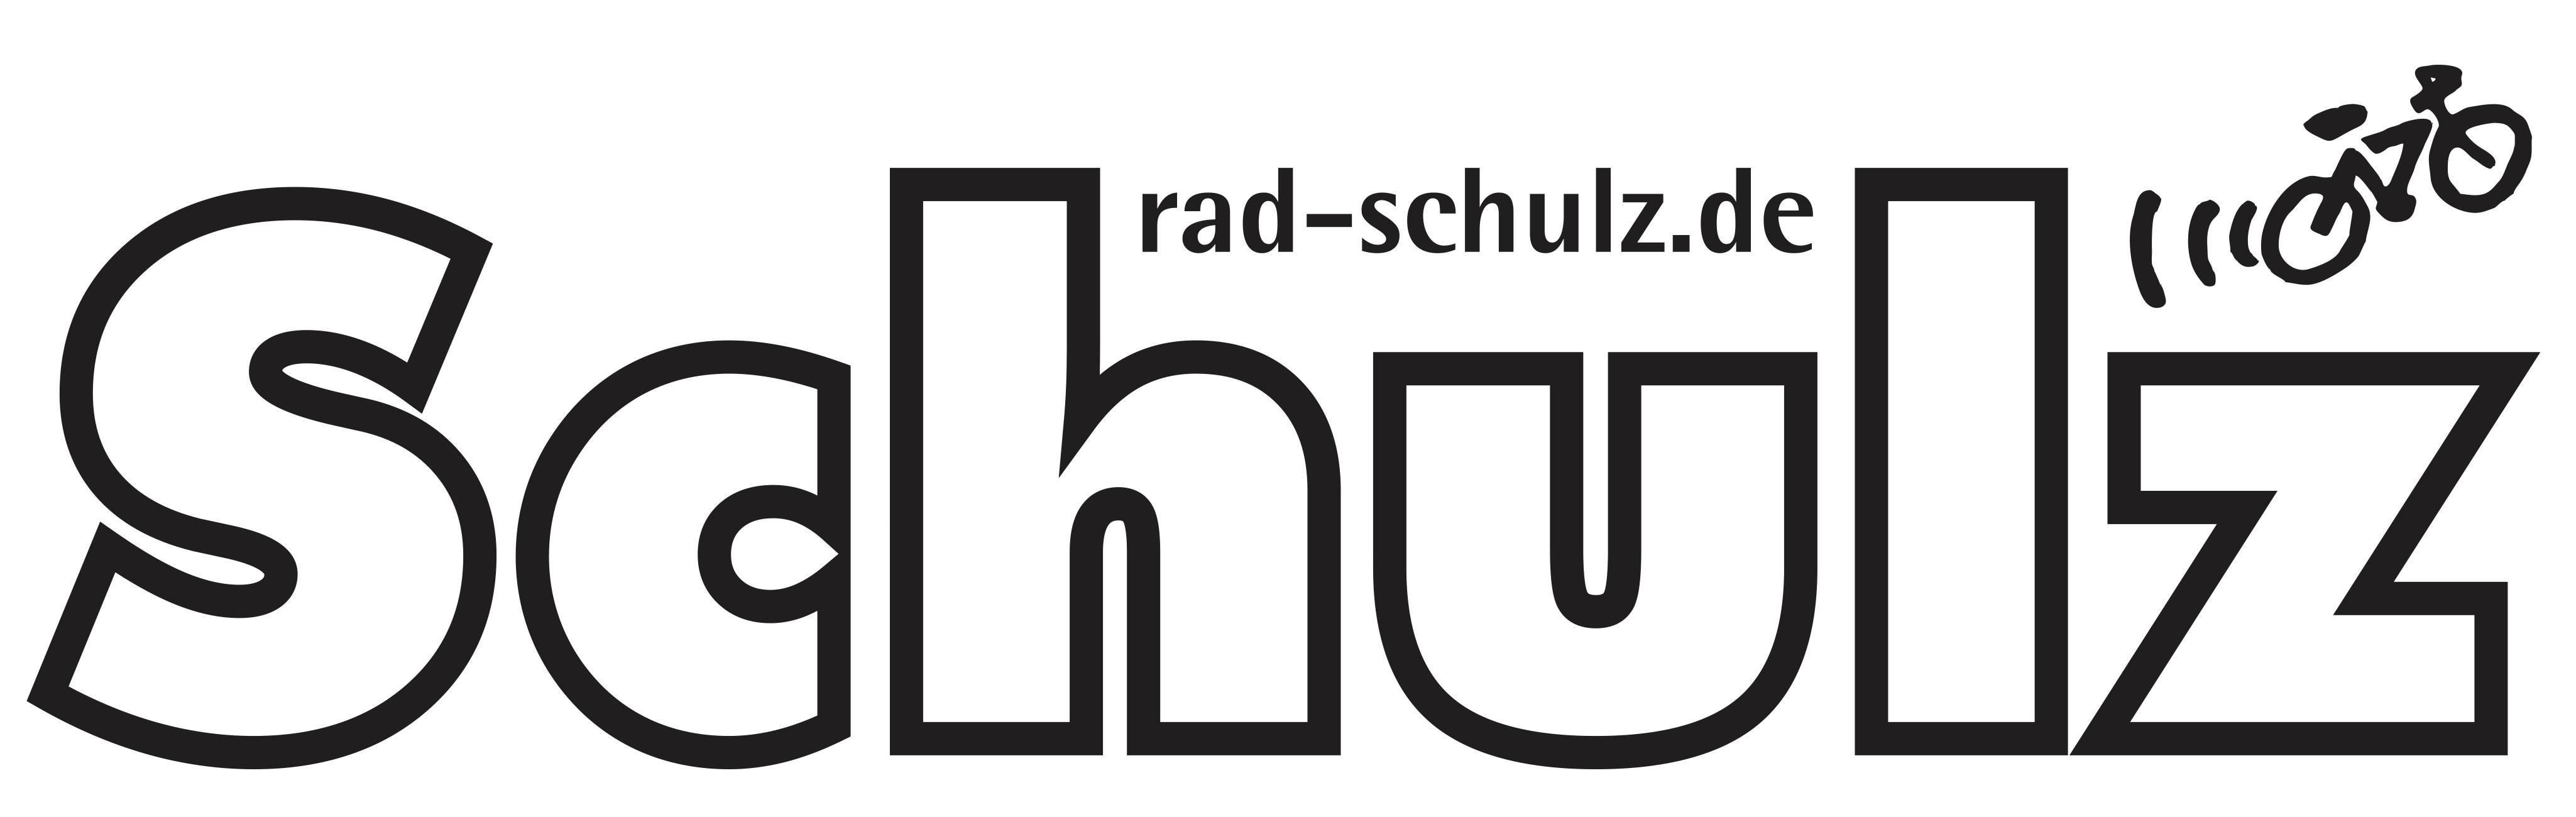 SCHULZ Logo flach 100K mR www 2018